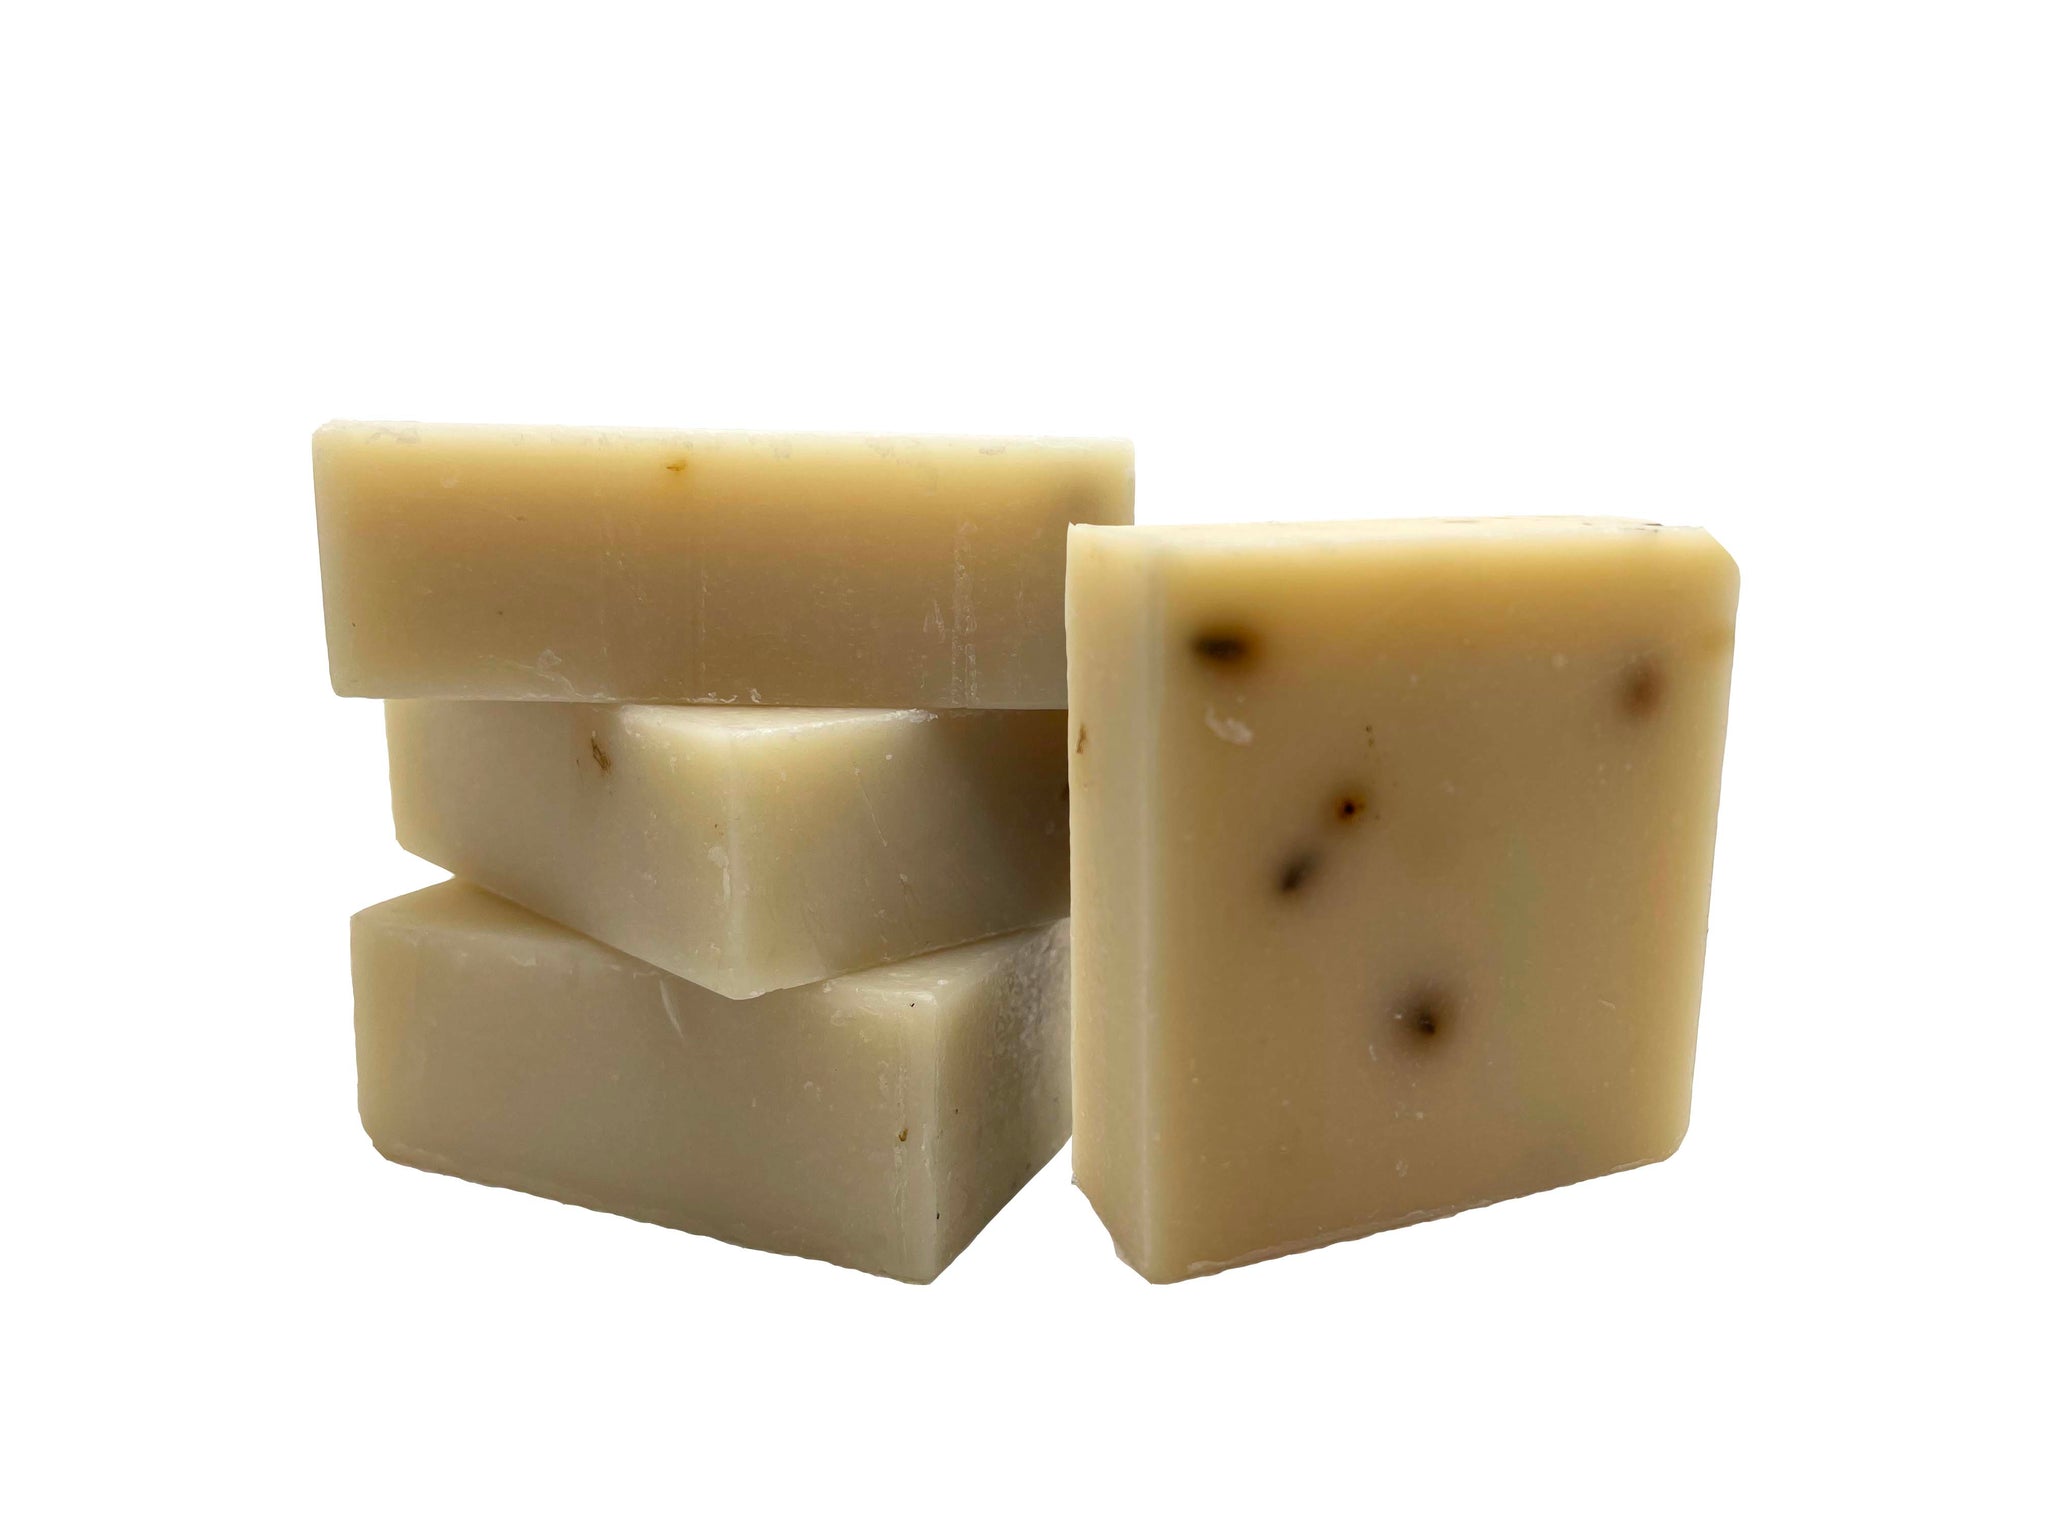 Olive Oil Handmade Soap